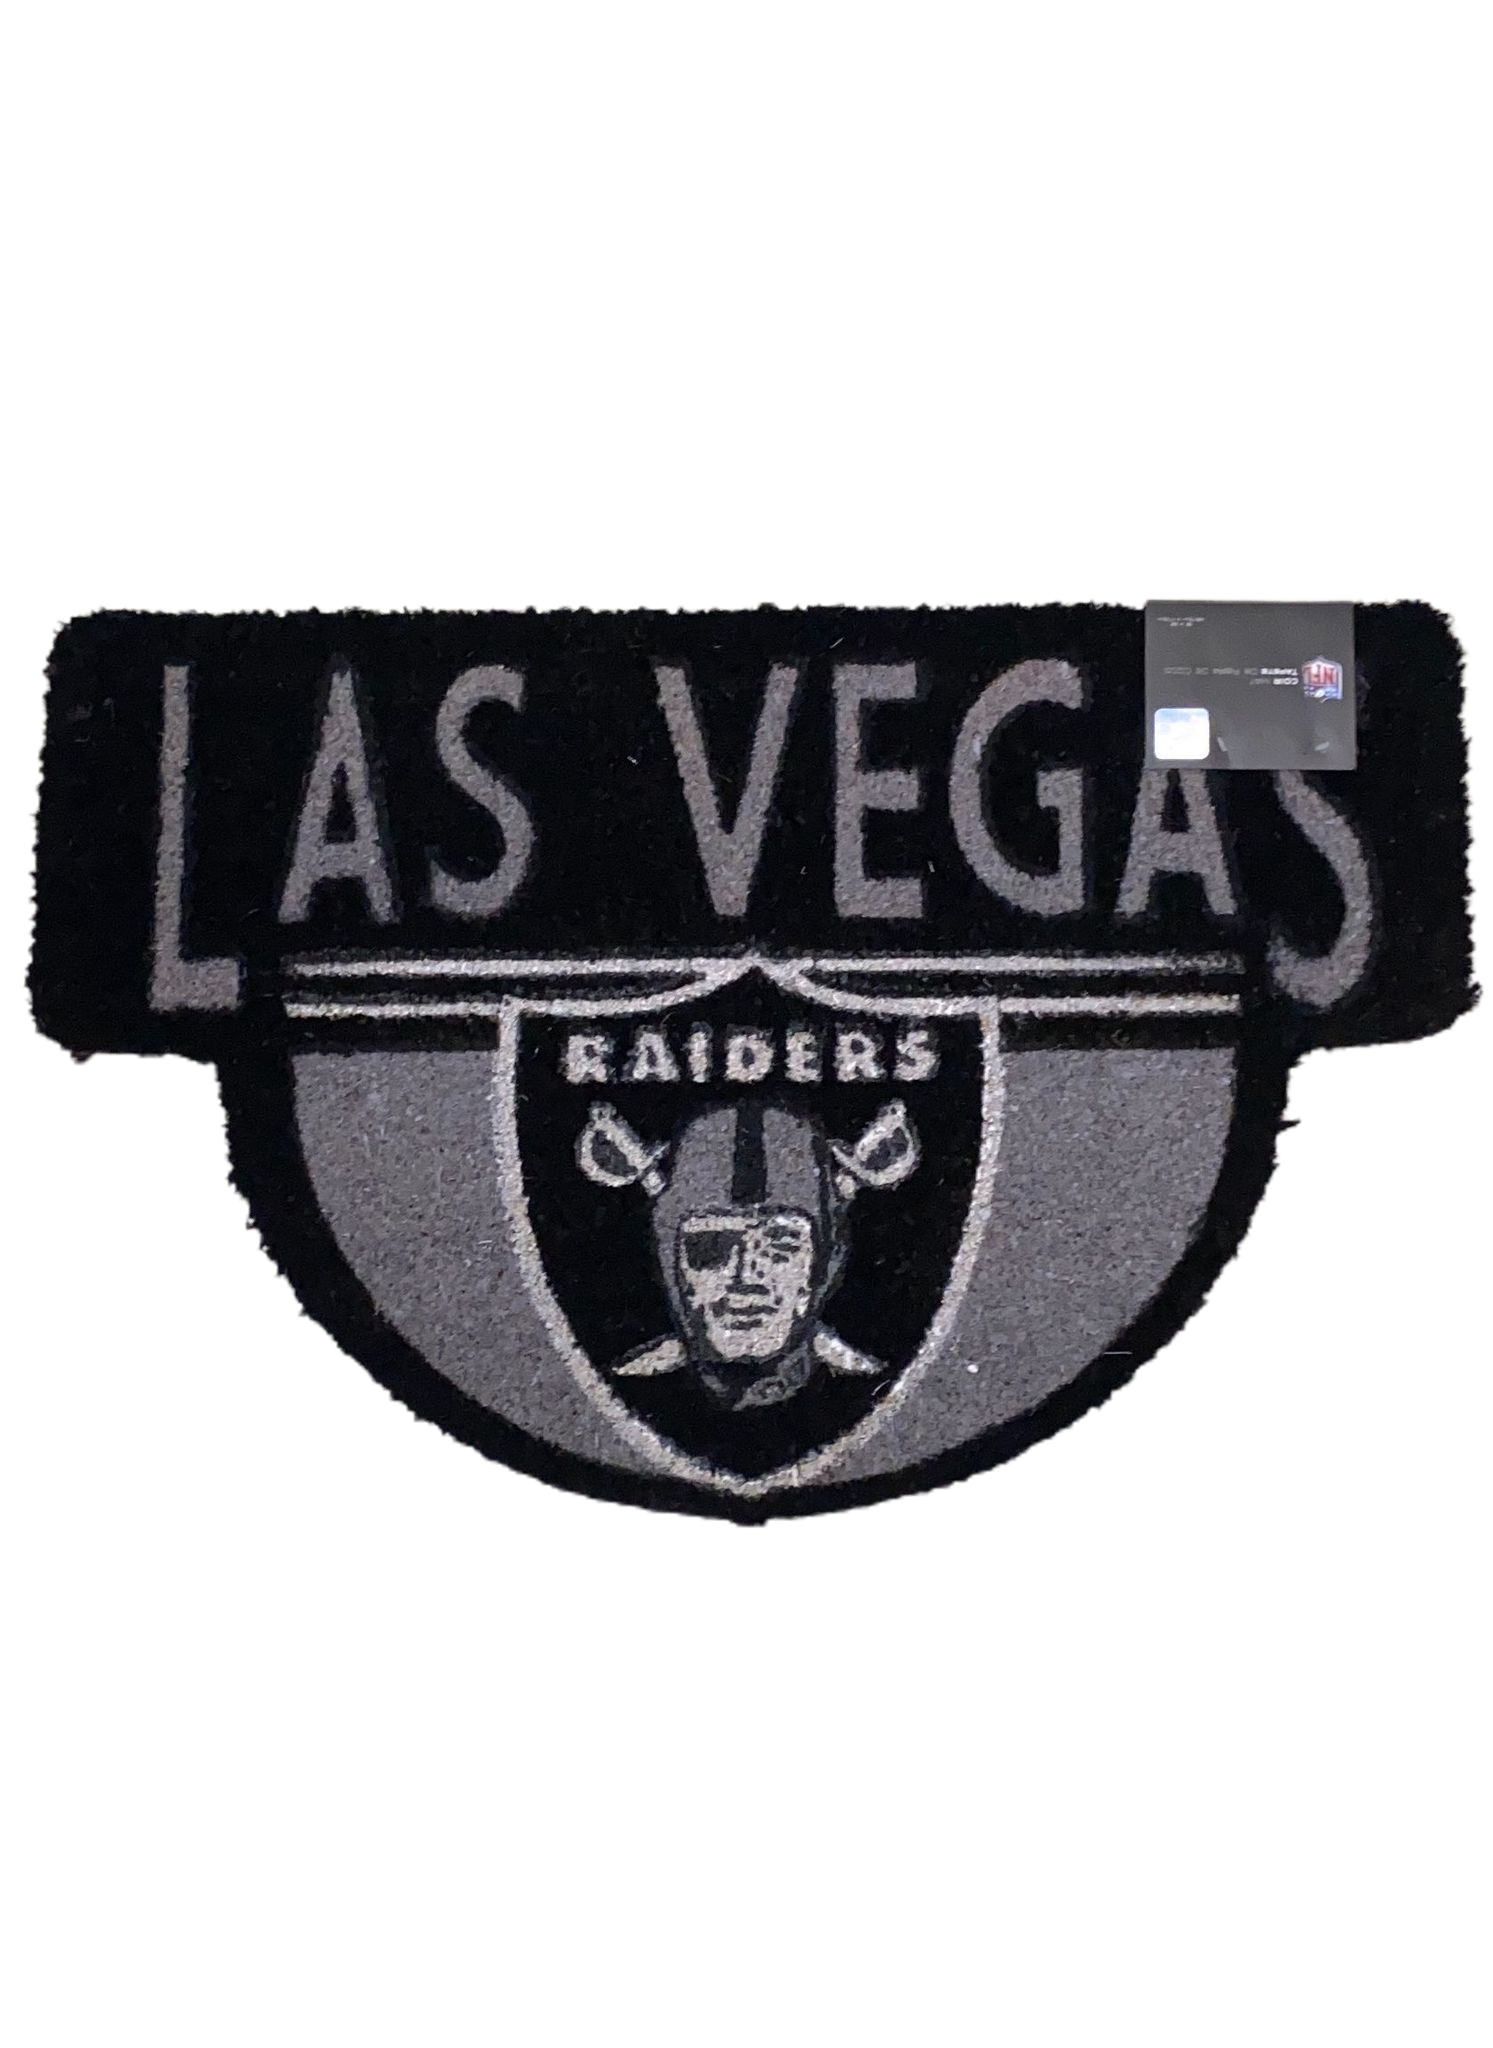 Las Vegas Raiders Shaped Coir Doormat